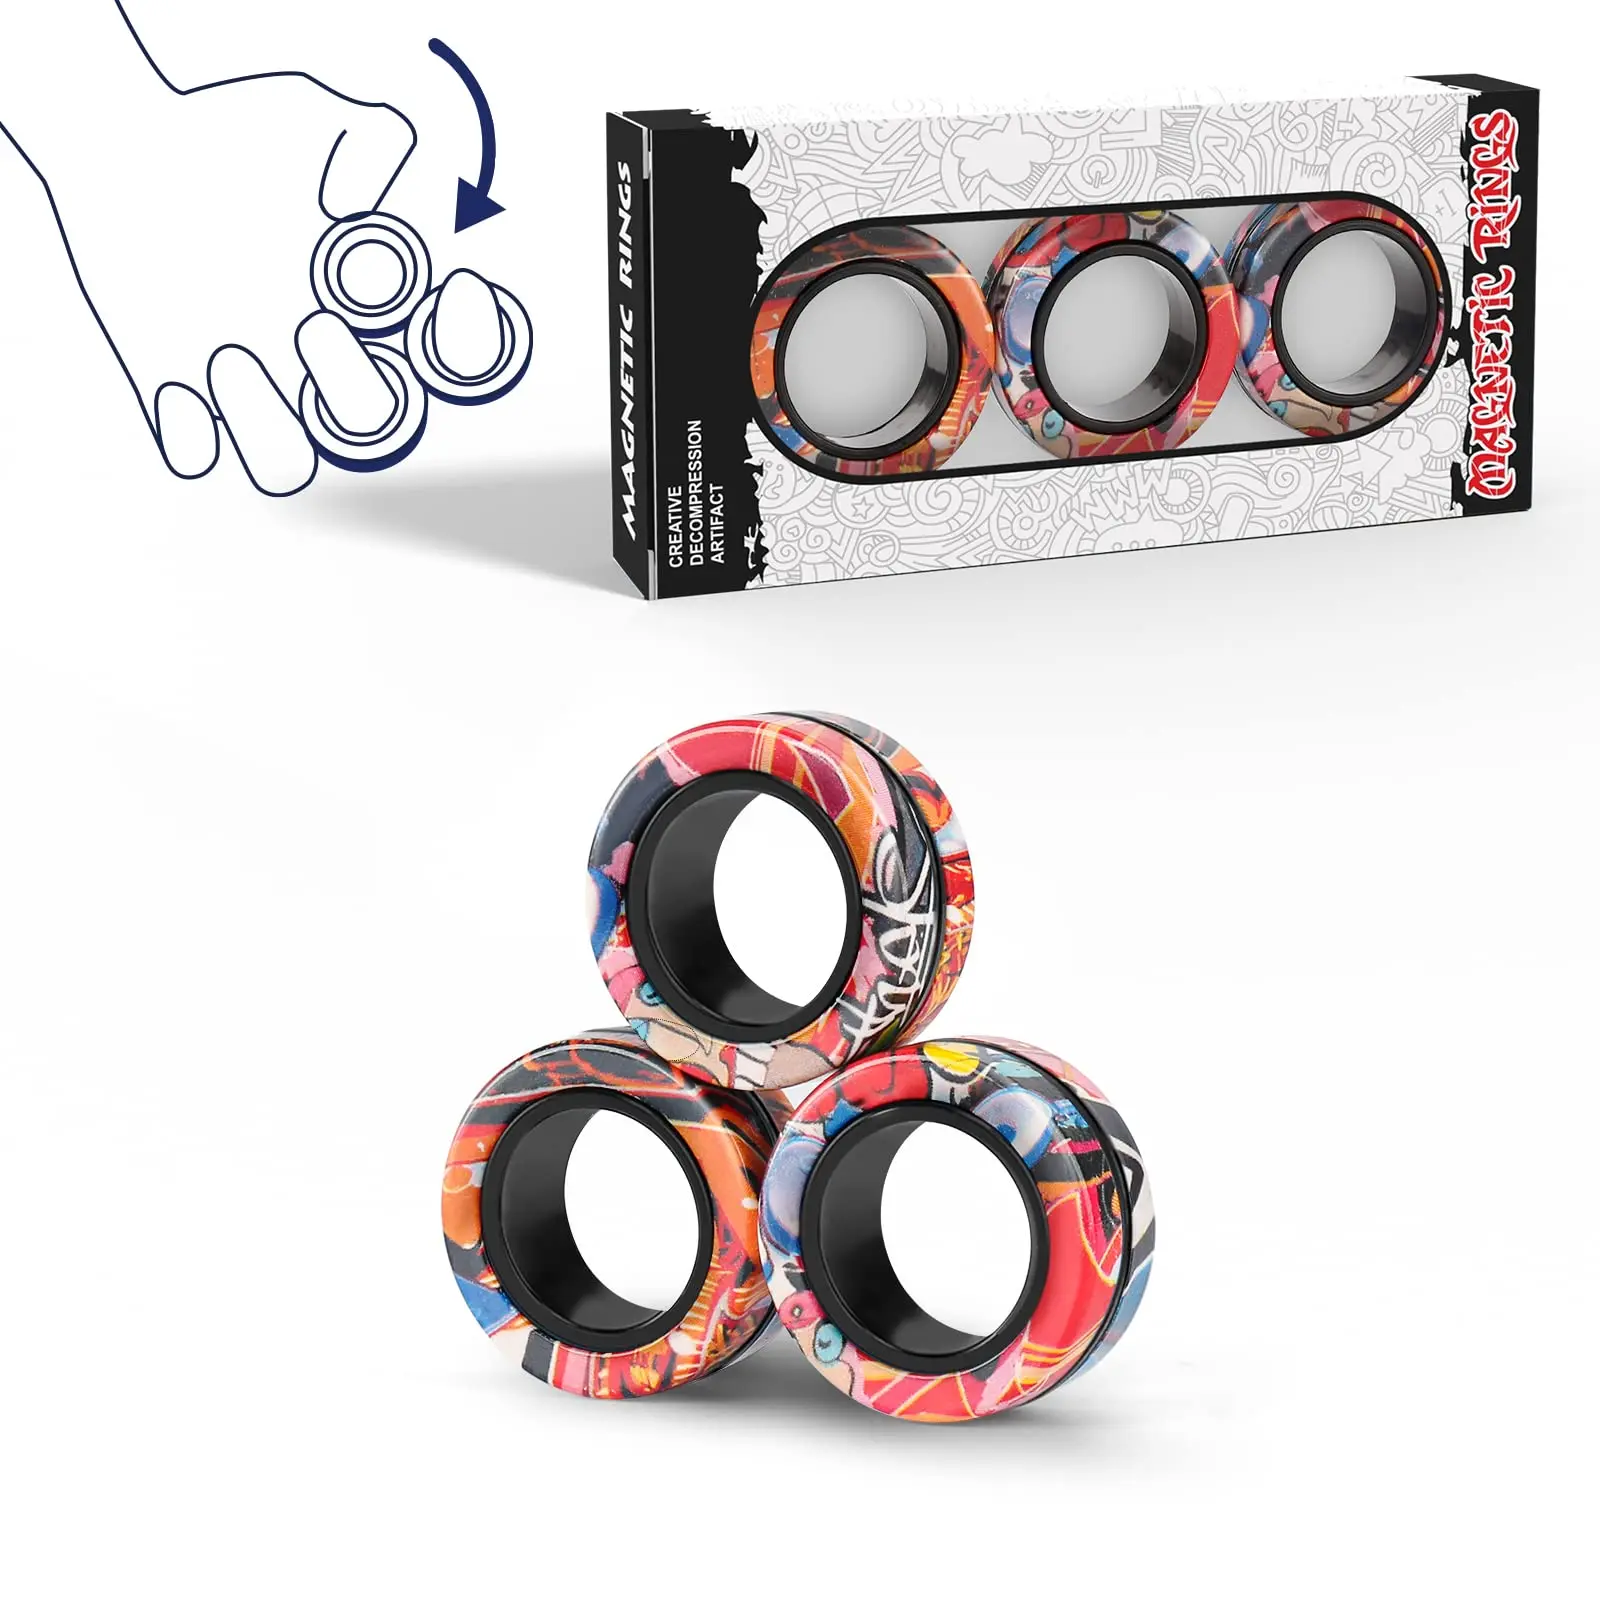 Finger Magnetic Ring Toys Fingears Fidget Spinner Activity Stress Relief Tricks 